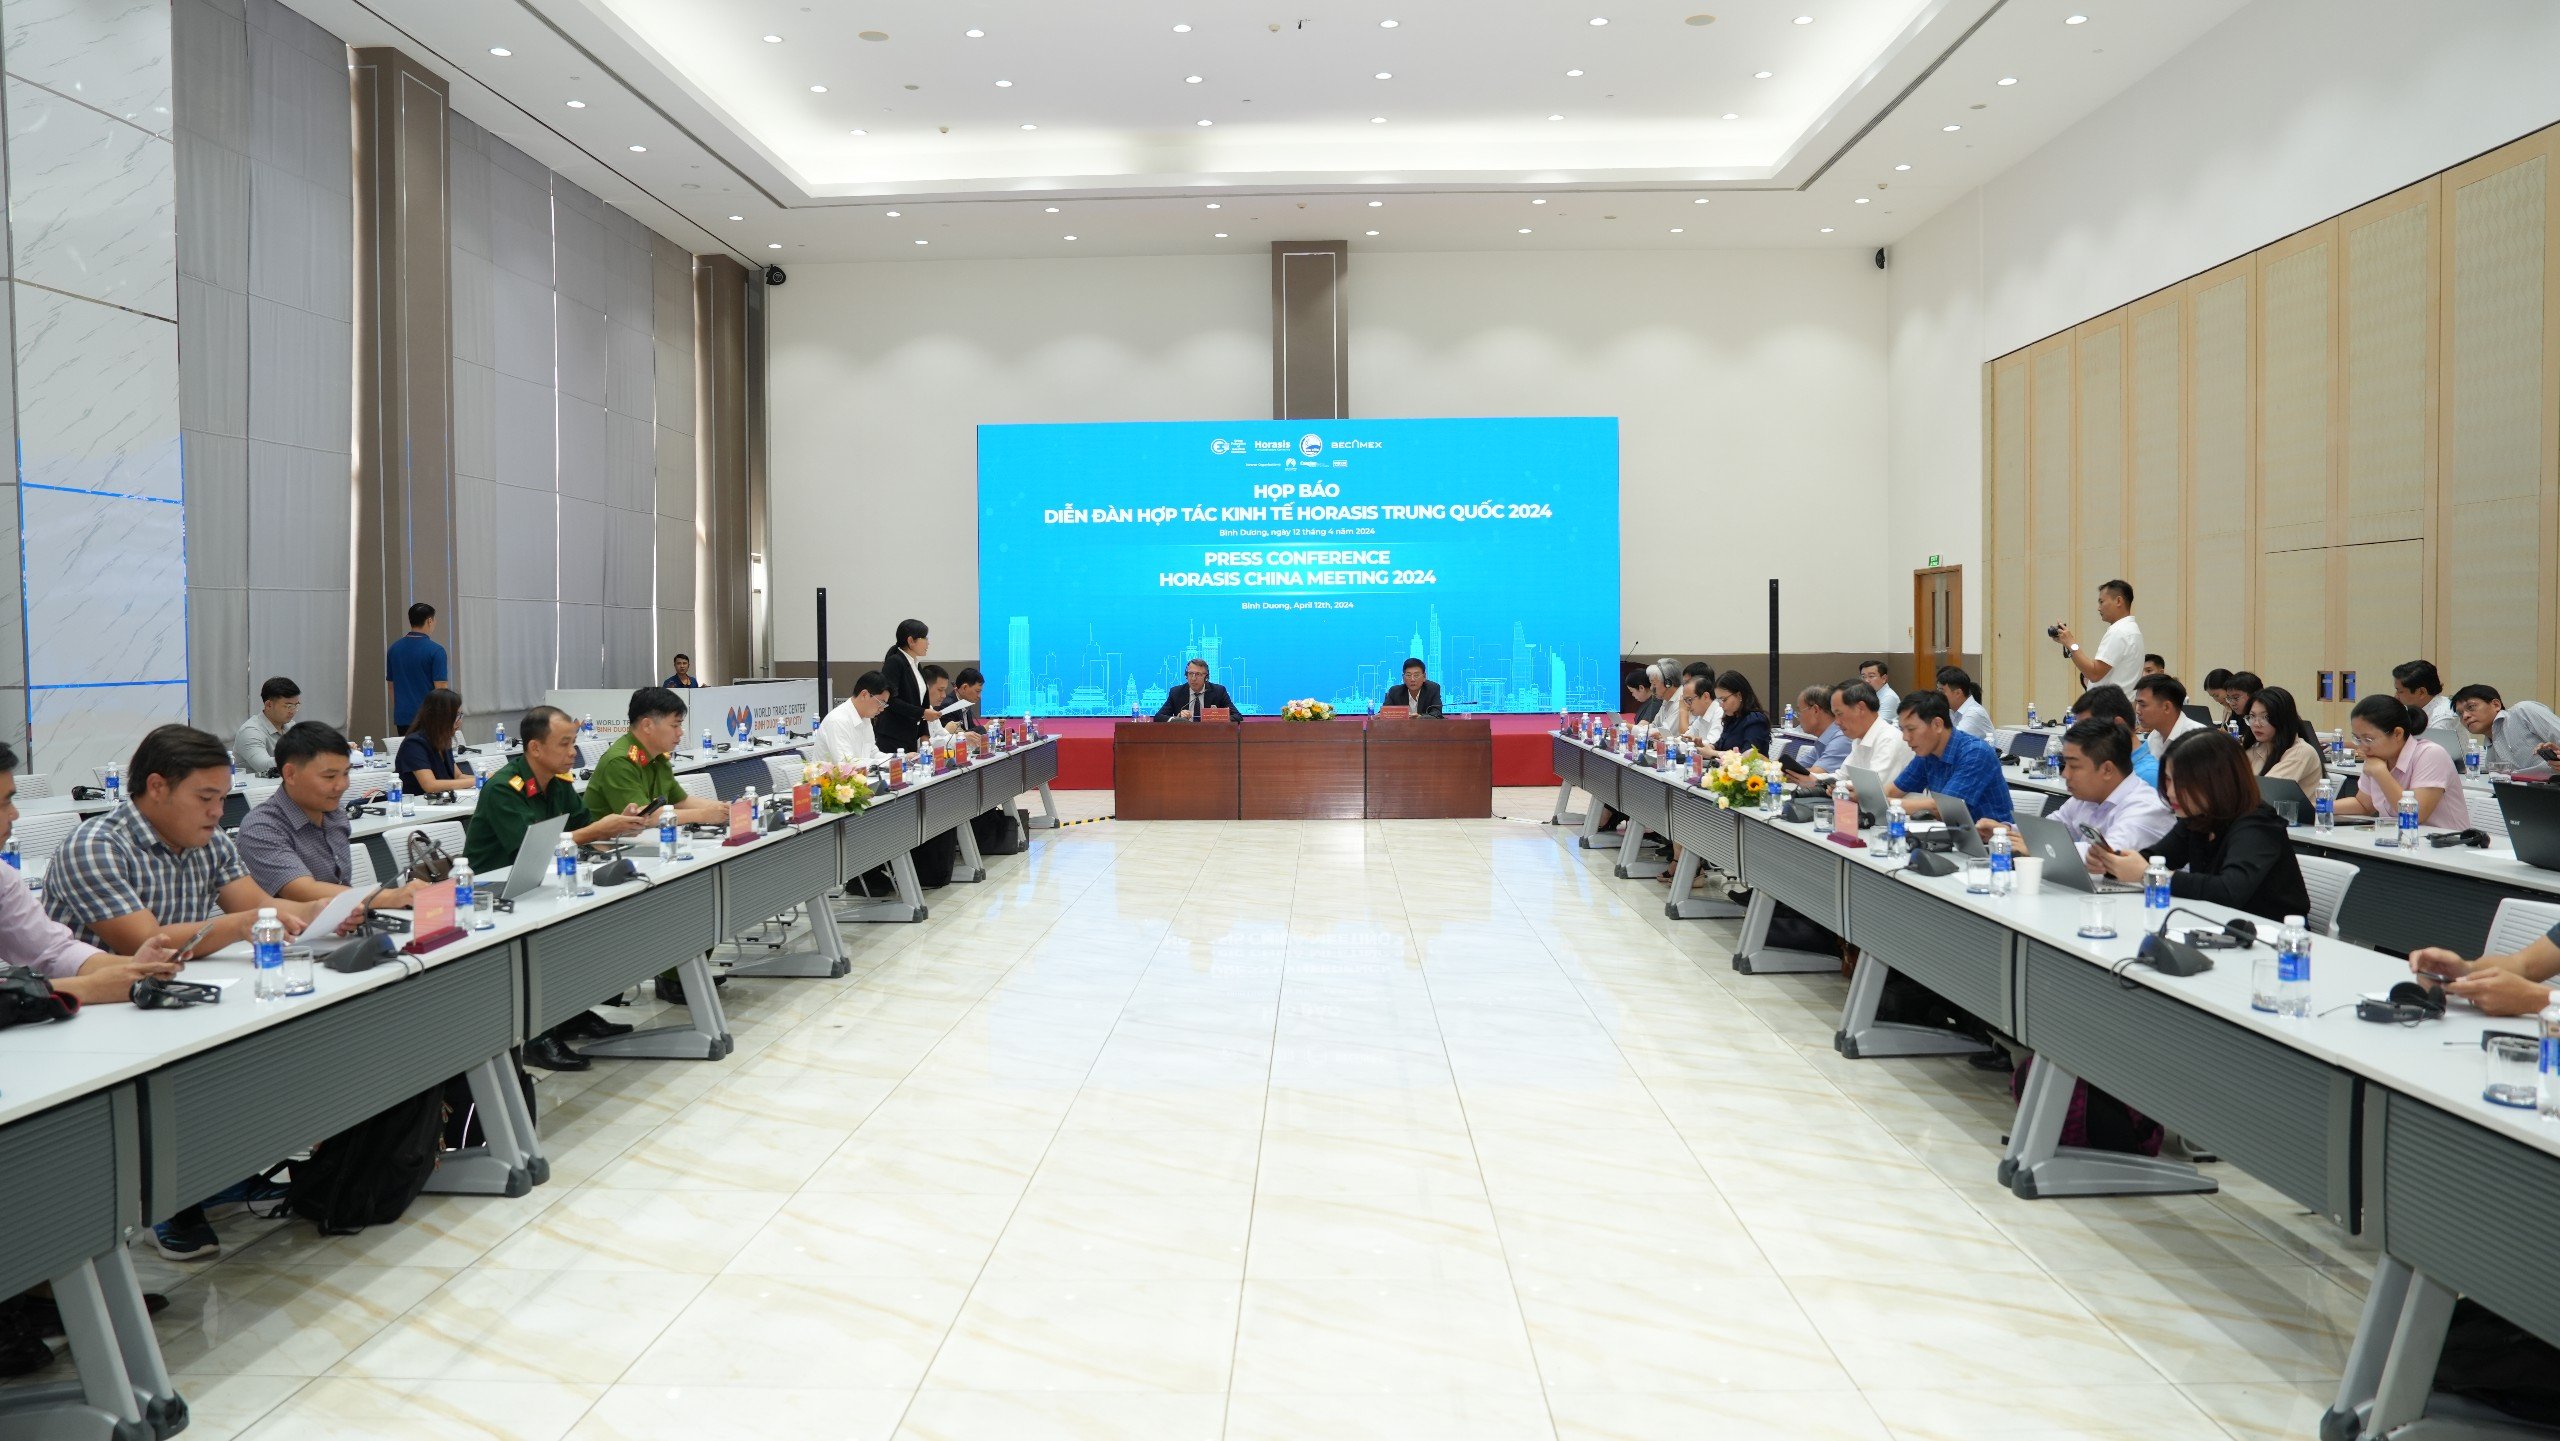 Bình Dương tổ chức Diễn đàn Hợp tác kinh tế Horasis Trung Quốc 2024

- Ảnh 1.